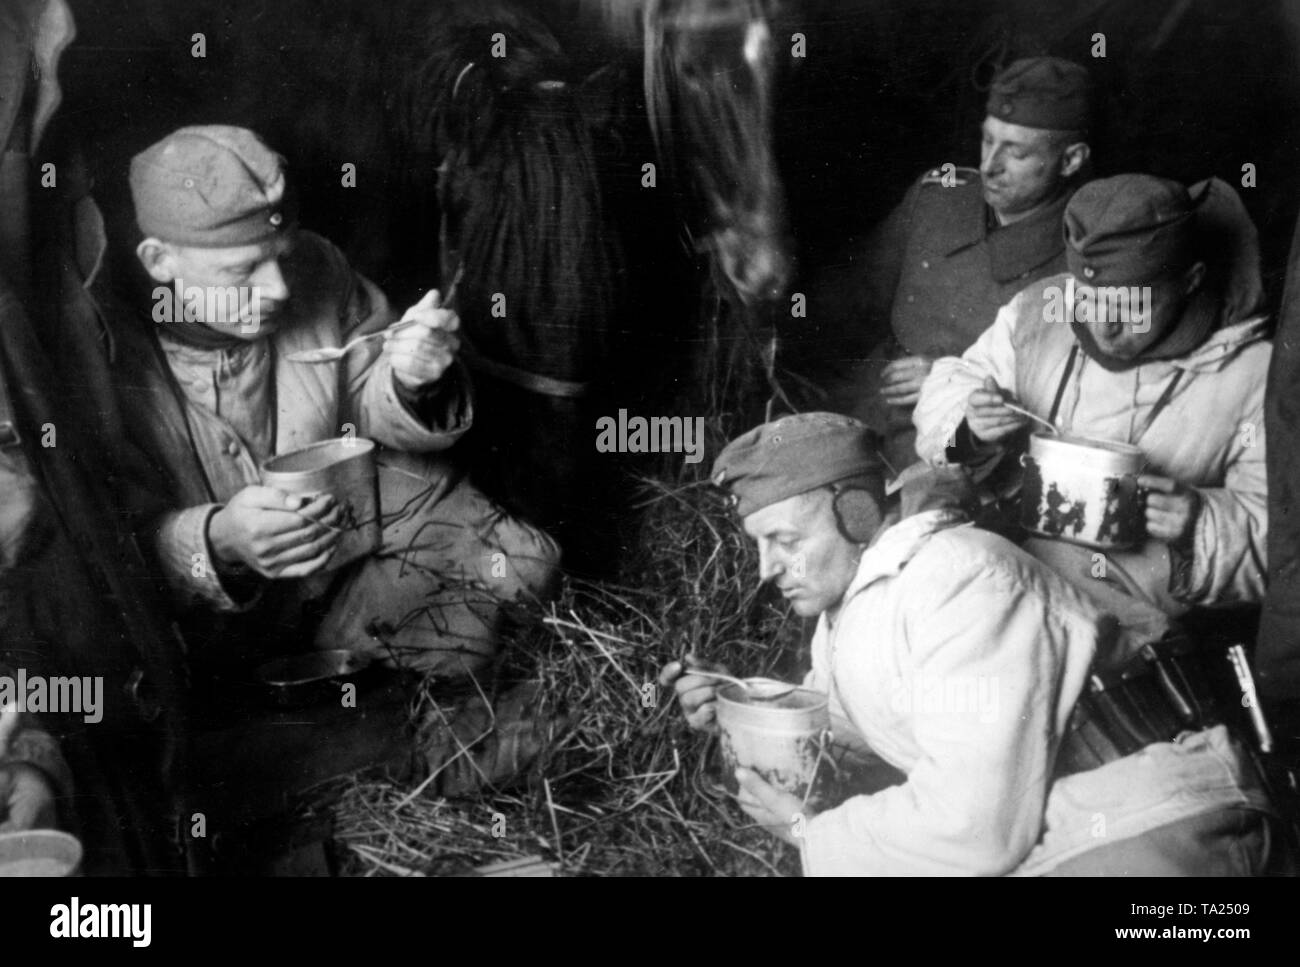 Soldati mangiare la minestra in un vagone ferroviario, che li porta alla successiva posizione di distribuzione. Lo stesso carro ospiterà i cavalli necessari per ulteriori trasporti. Essi si trovano a sud di Oryol (Orel) nella omonima oblast. Foto di Propaganda Company (PK): corrispondente di guerra Henisch. Foto Stock